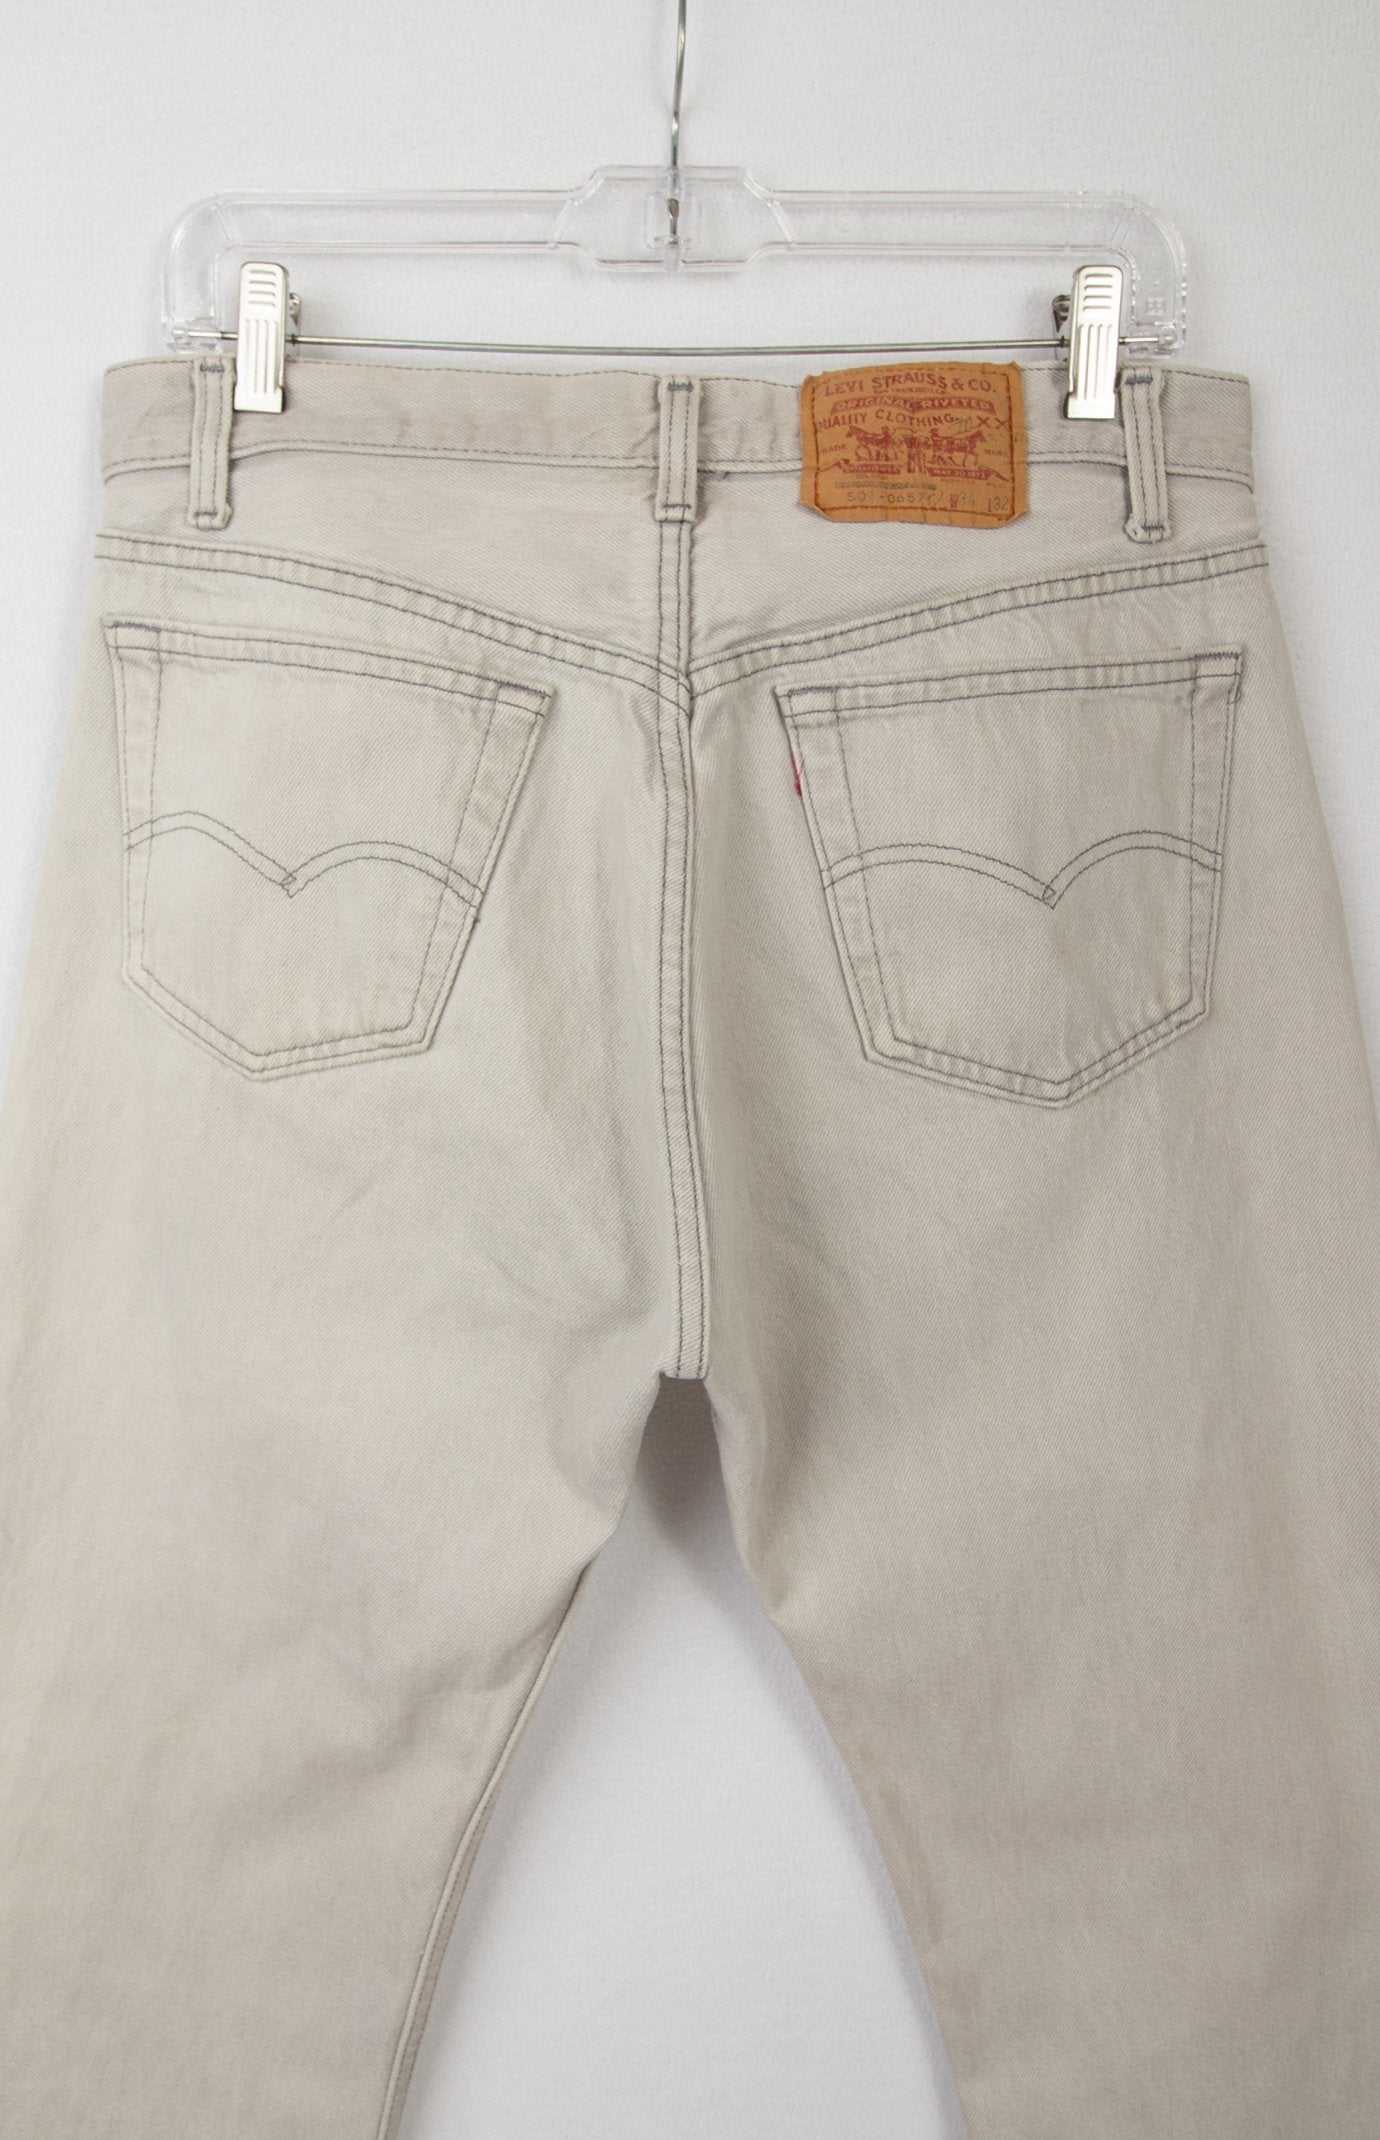 Levi's 501 Jeans, Vintage Levis Jeans